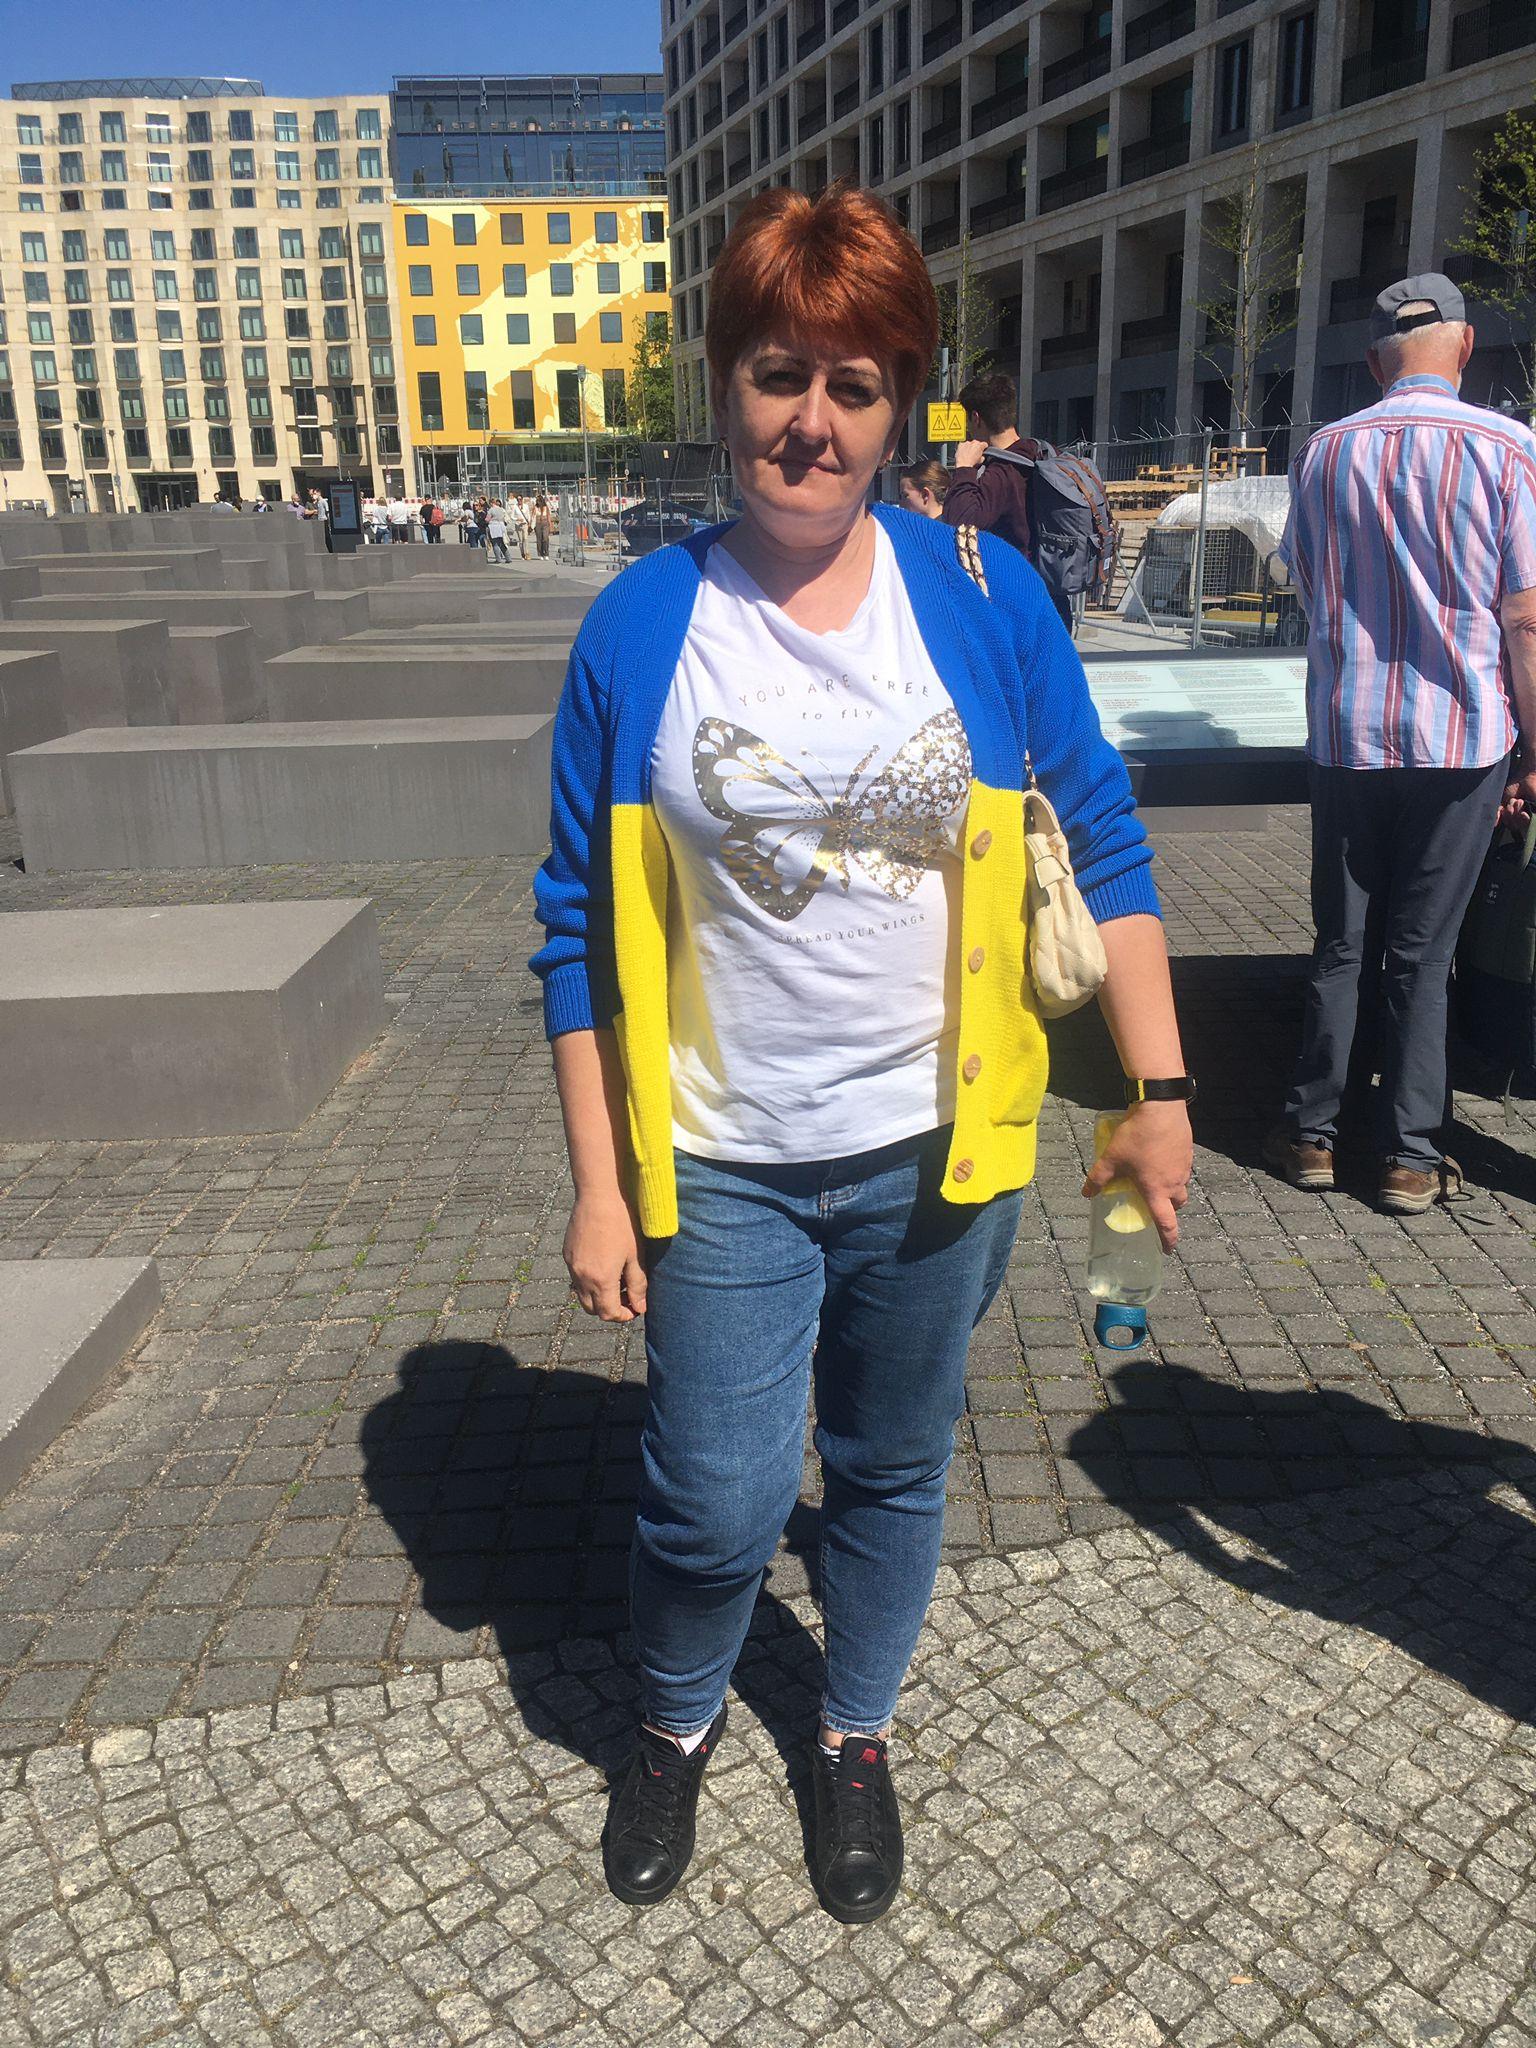 Natalia przyjechała do Berlina w swetrze w barwach narodowych Ukrainy. Miała nadzieję, że w ten sposób ominie niemiecki zakaz eksponowania ukraińskich flag. Jednak policjant kazał jej zdjąć sweter przed zbliżeniem sie do Pomnika Żołnierzy Radzieckich, 8 maja 2022, fot. A. Szczęśniak